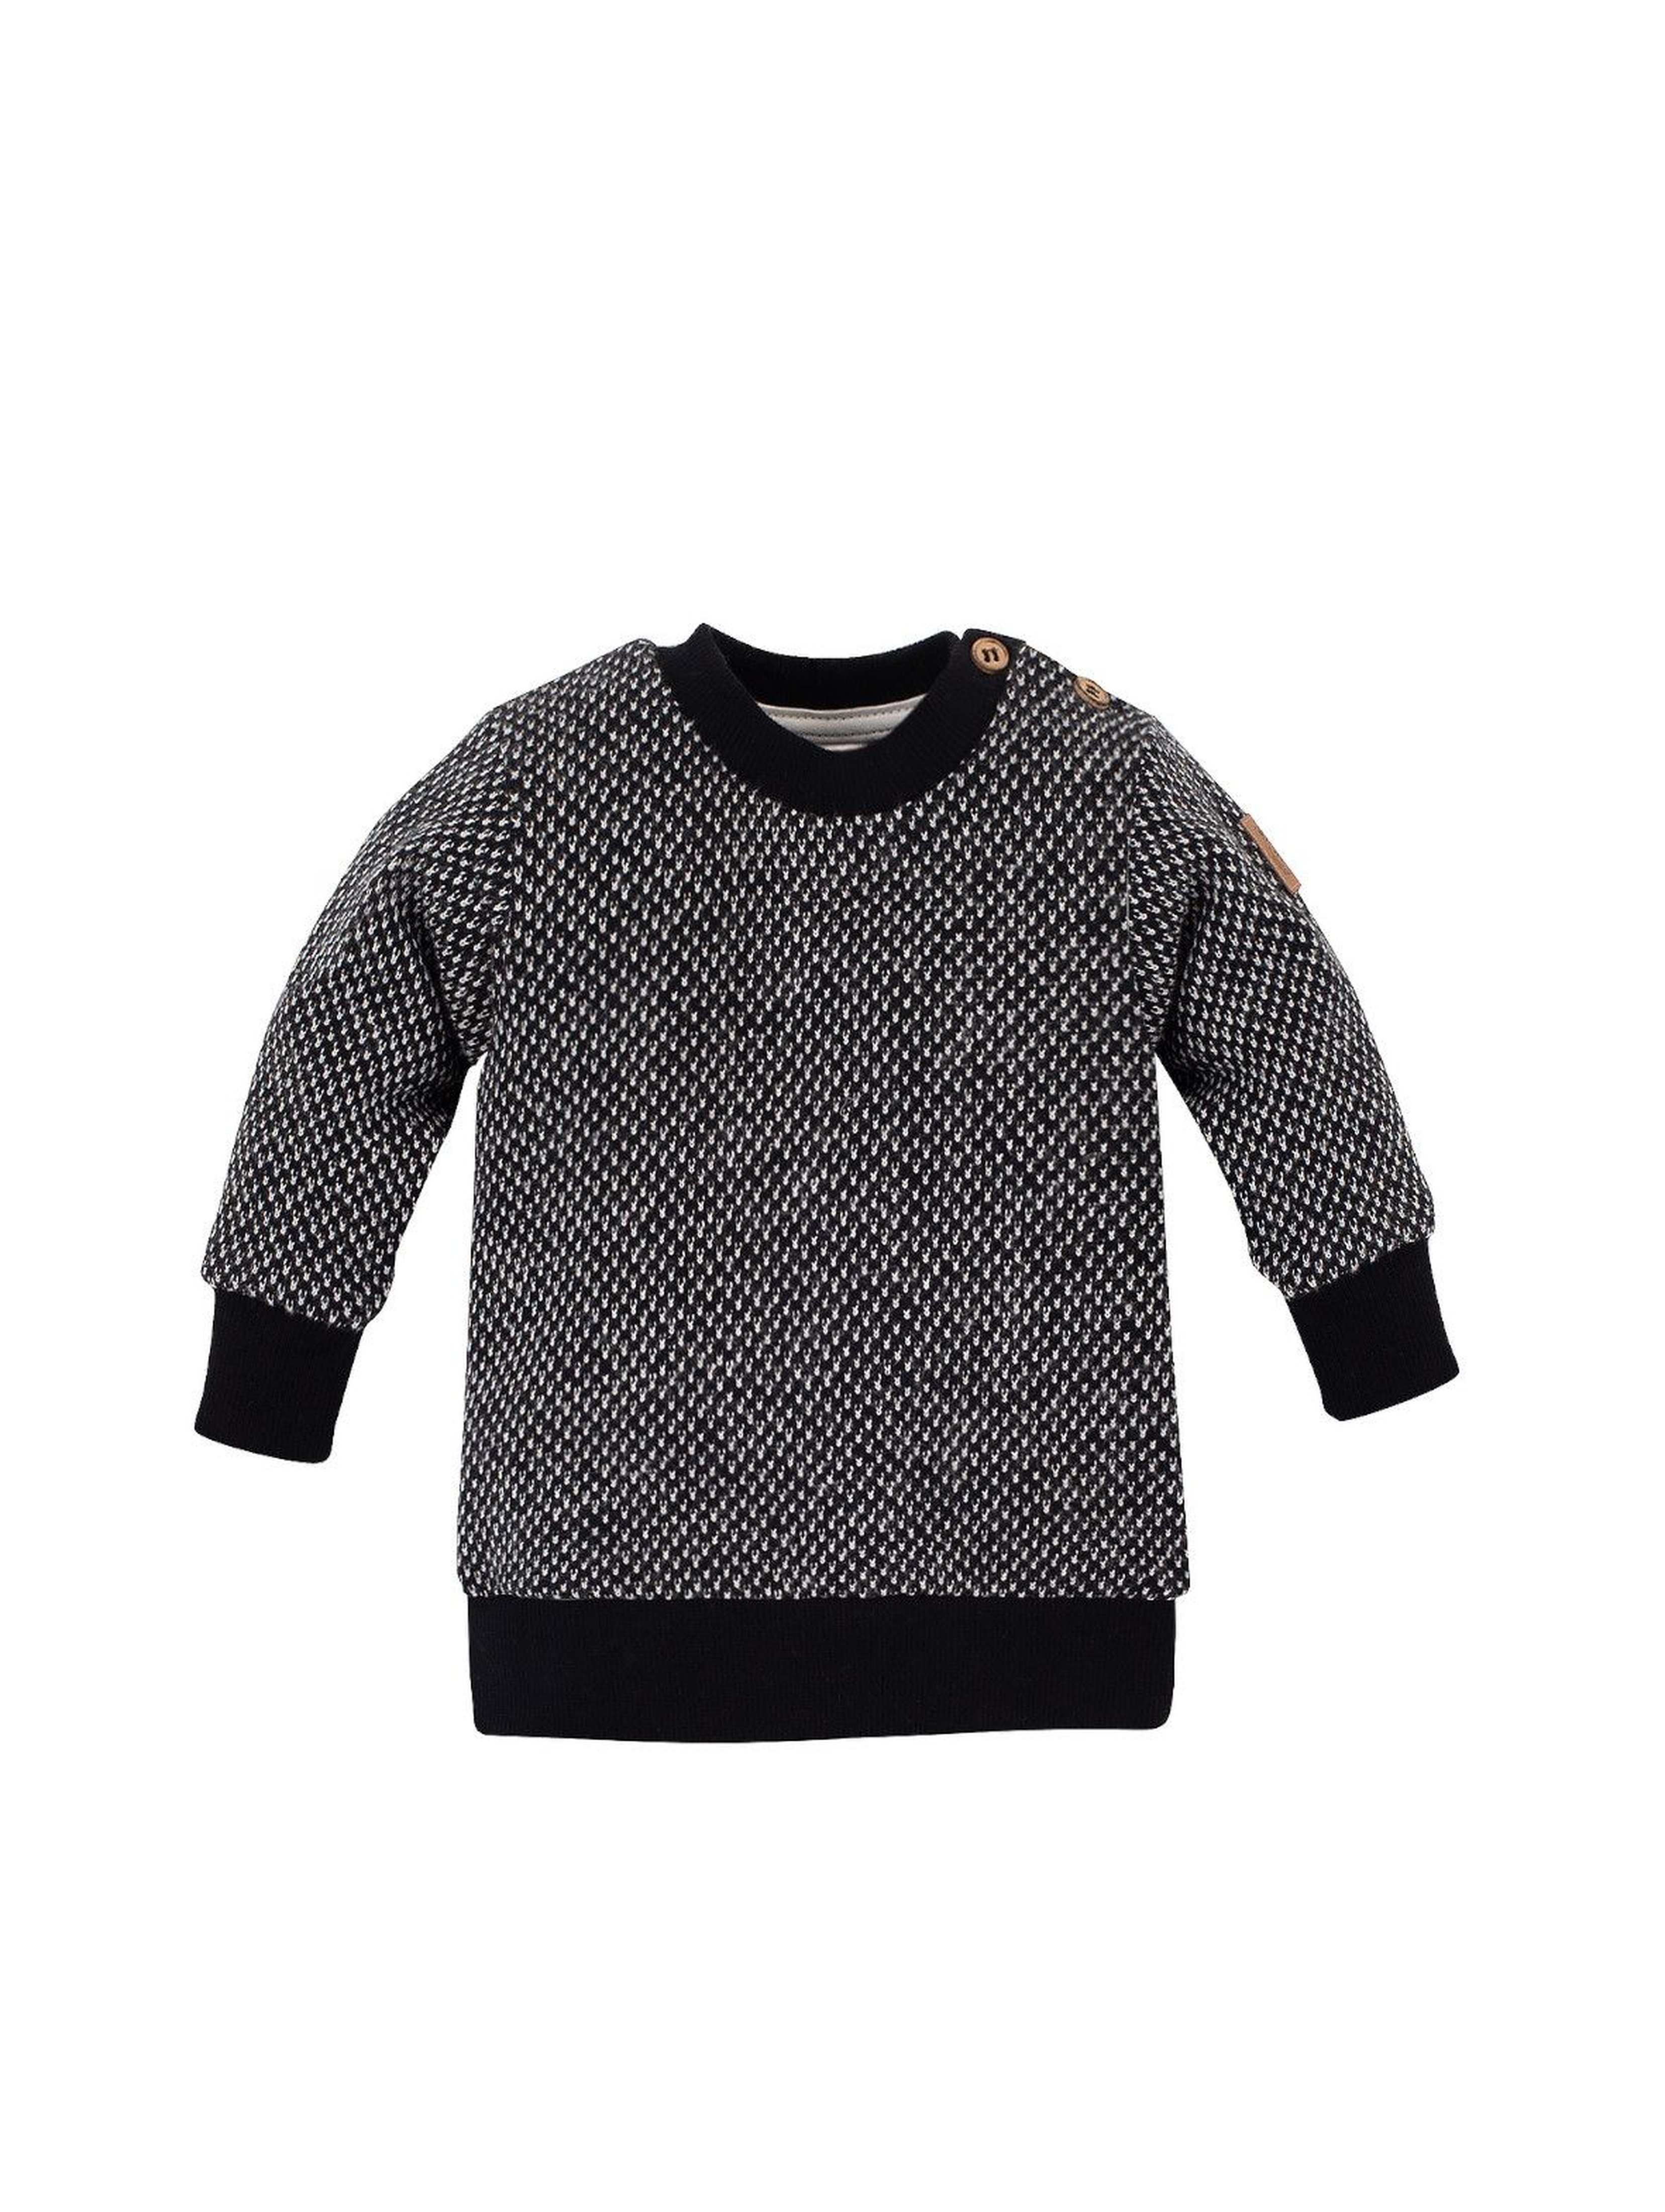 Bawełniany sweter chłopięcy - czarny